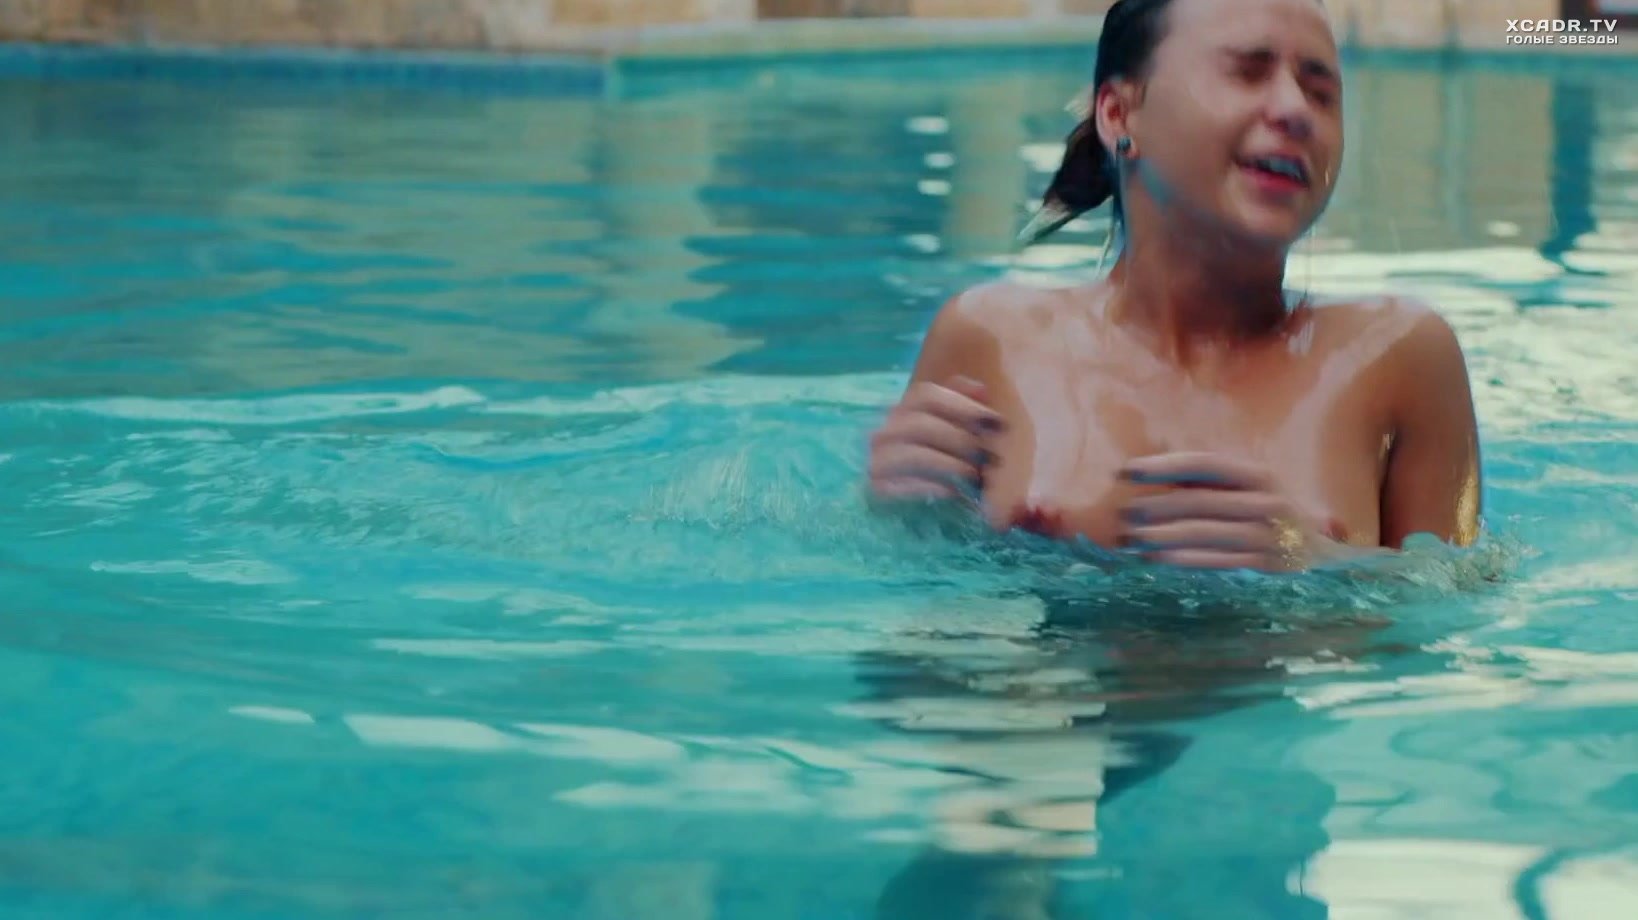 5. Мария Бакалова плавает голой в бассейне - Трангрессия.